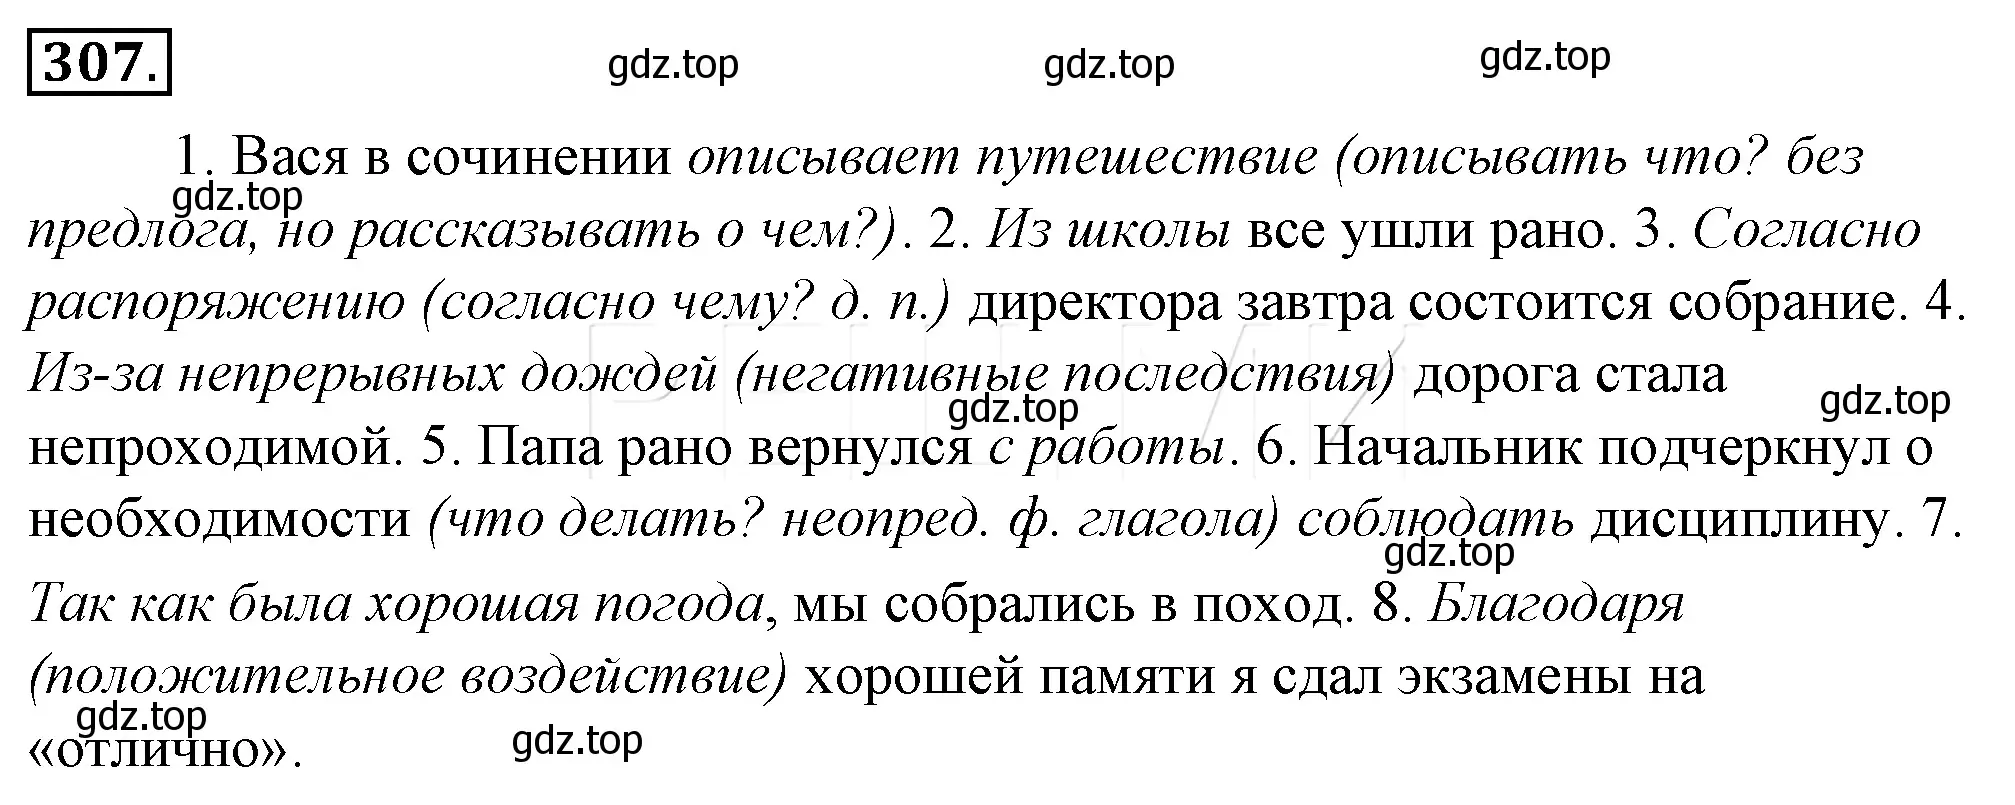 Решение 4. номер 331 (страница 307) гдз по русскому языку 10-11 класс Гольцова, Шамшин, учебник 1 часть